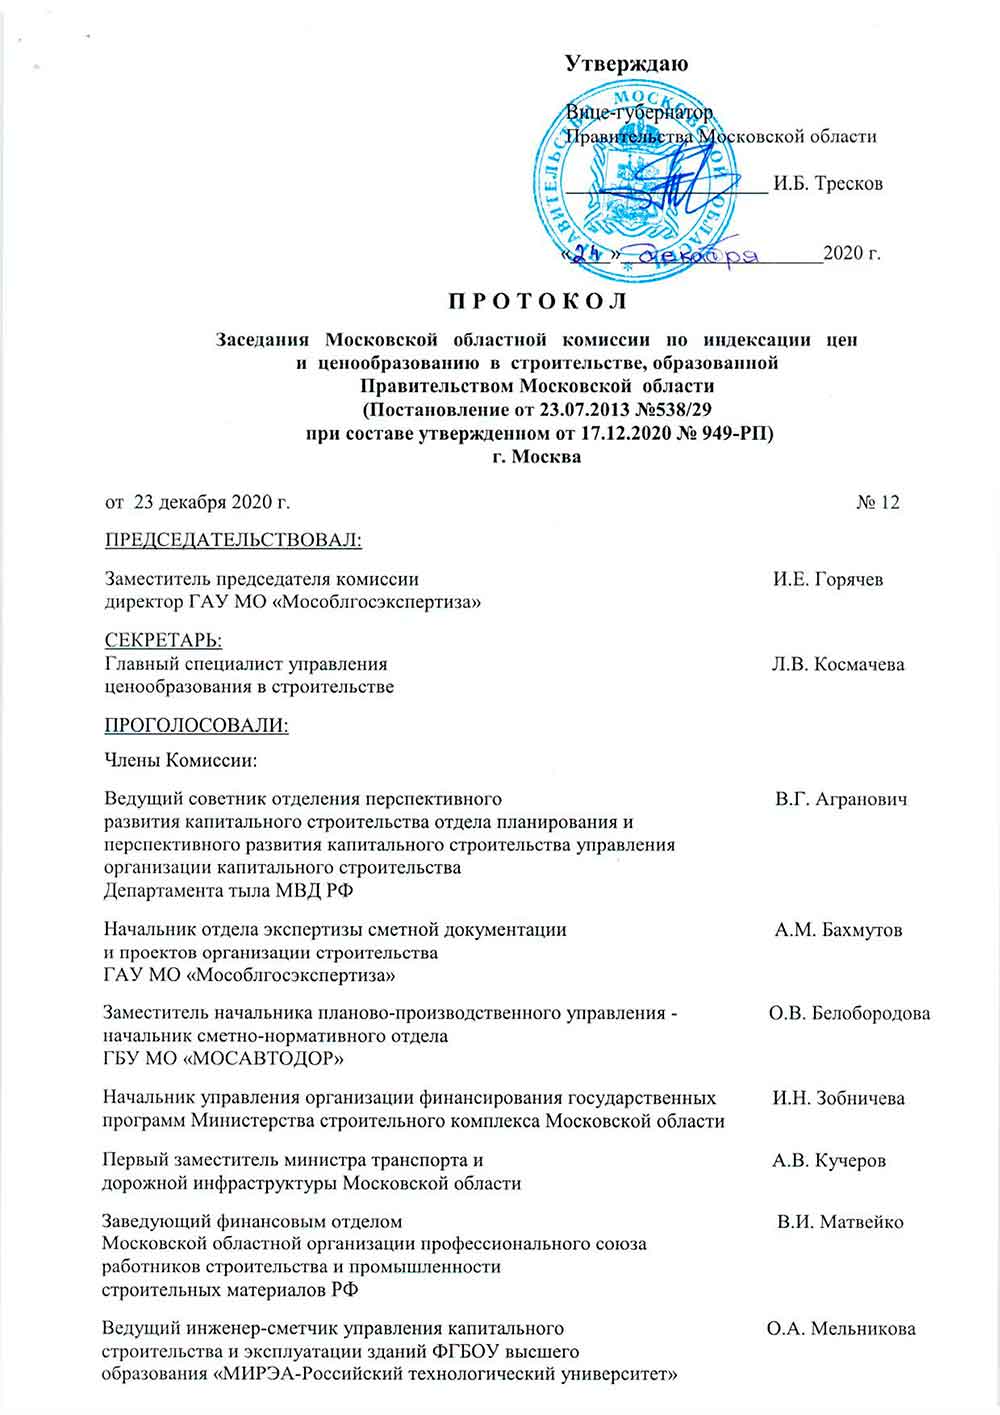 Протокол Мособлгосэкспертизы №12 от 23.12.2020 года